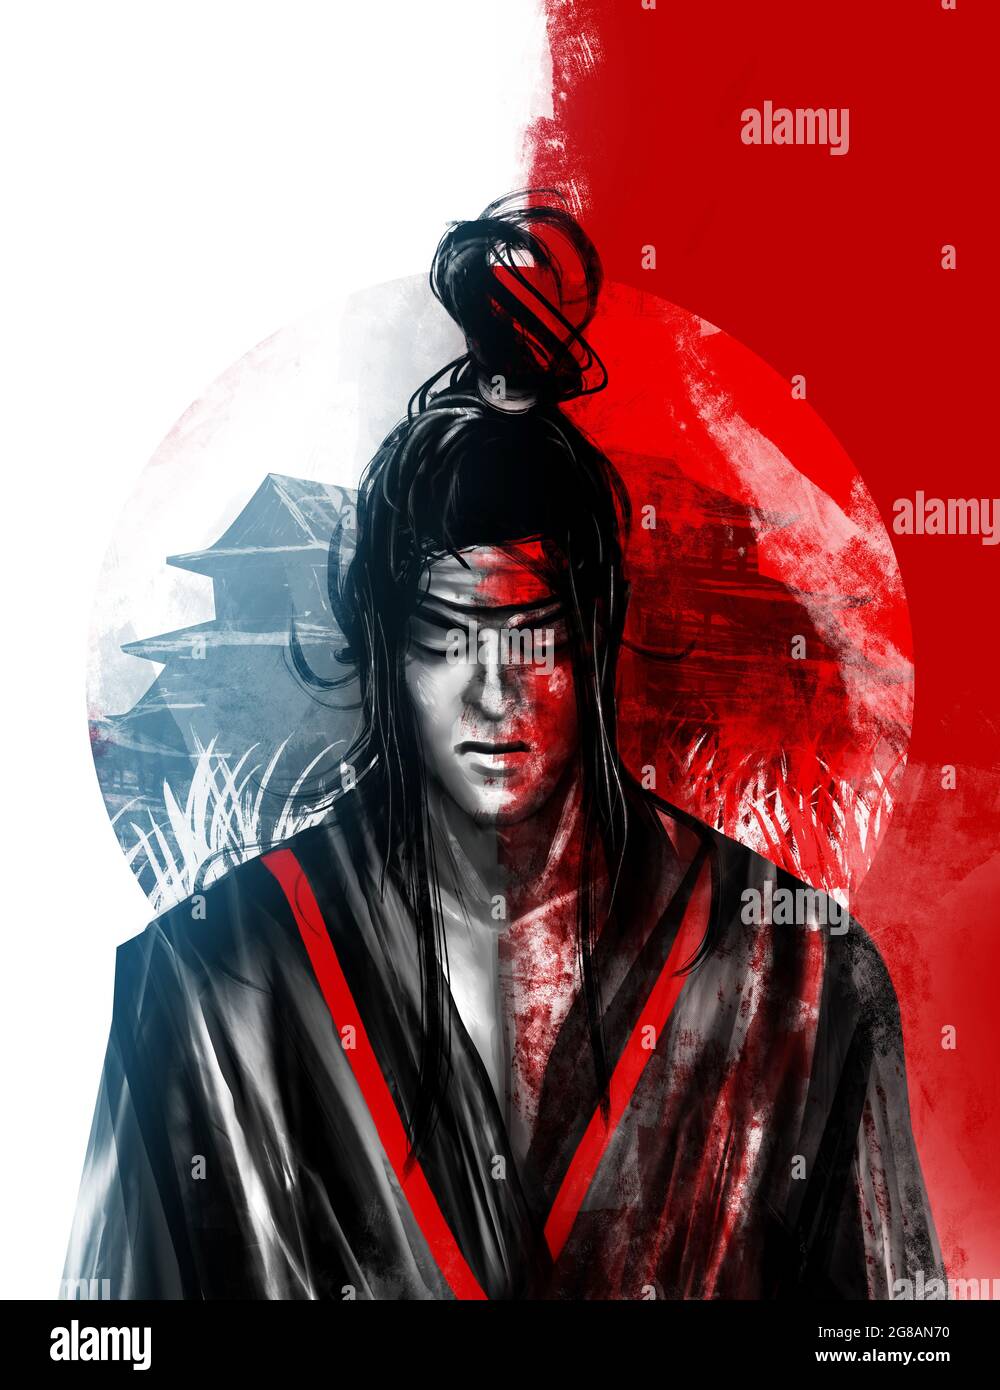 Artwork illustration of japanese samurai warrior divided on evil and good side. Stock Photo